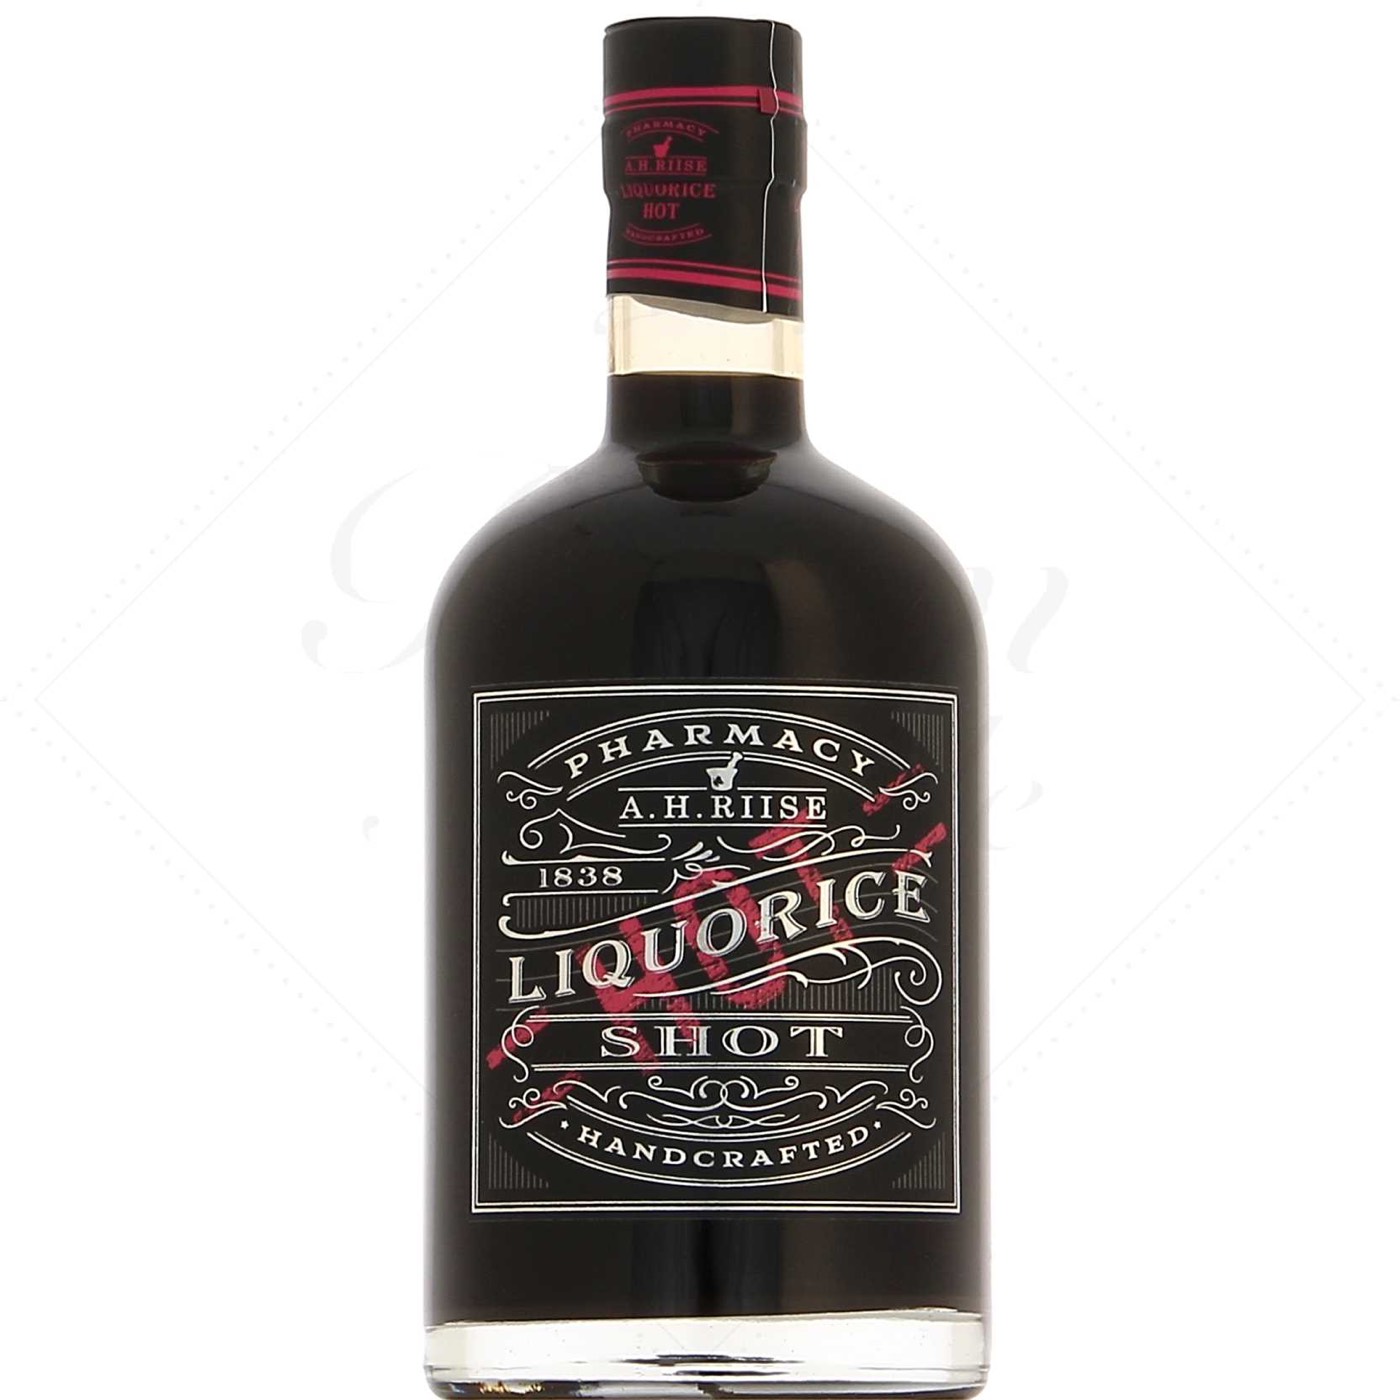 Bottle image of Pharmacy Liquorice